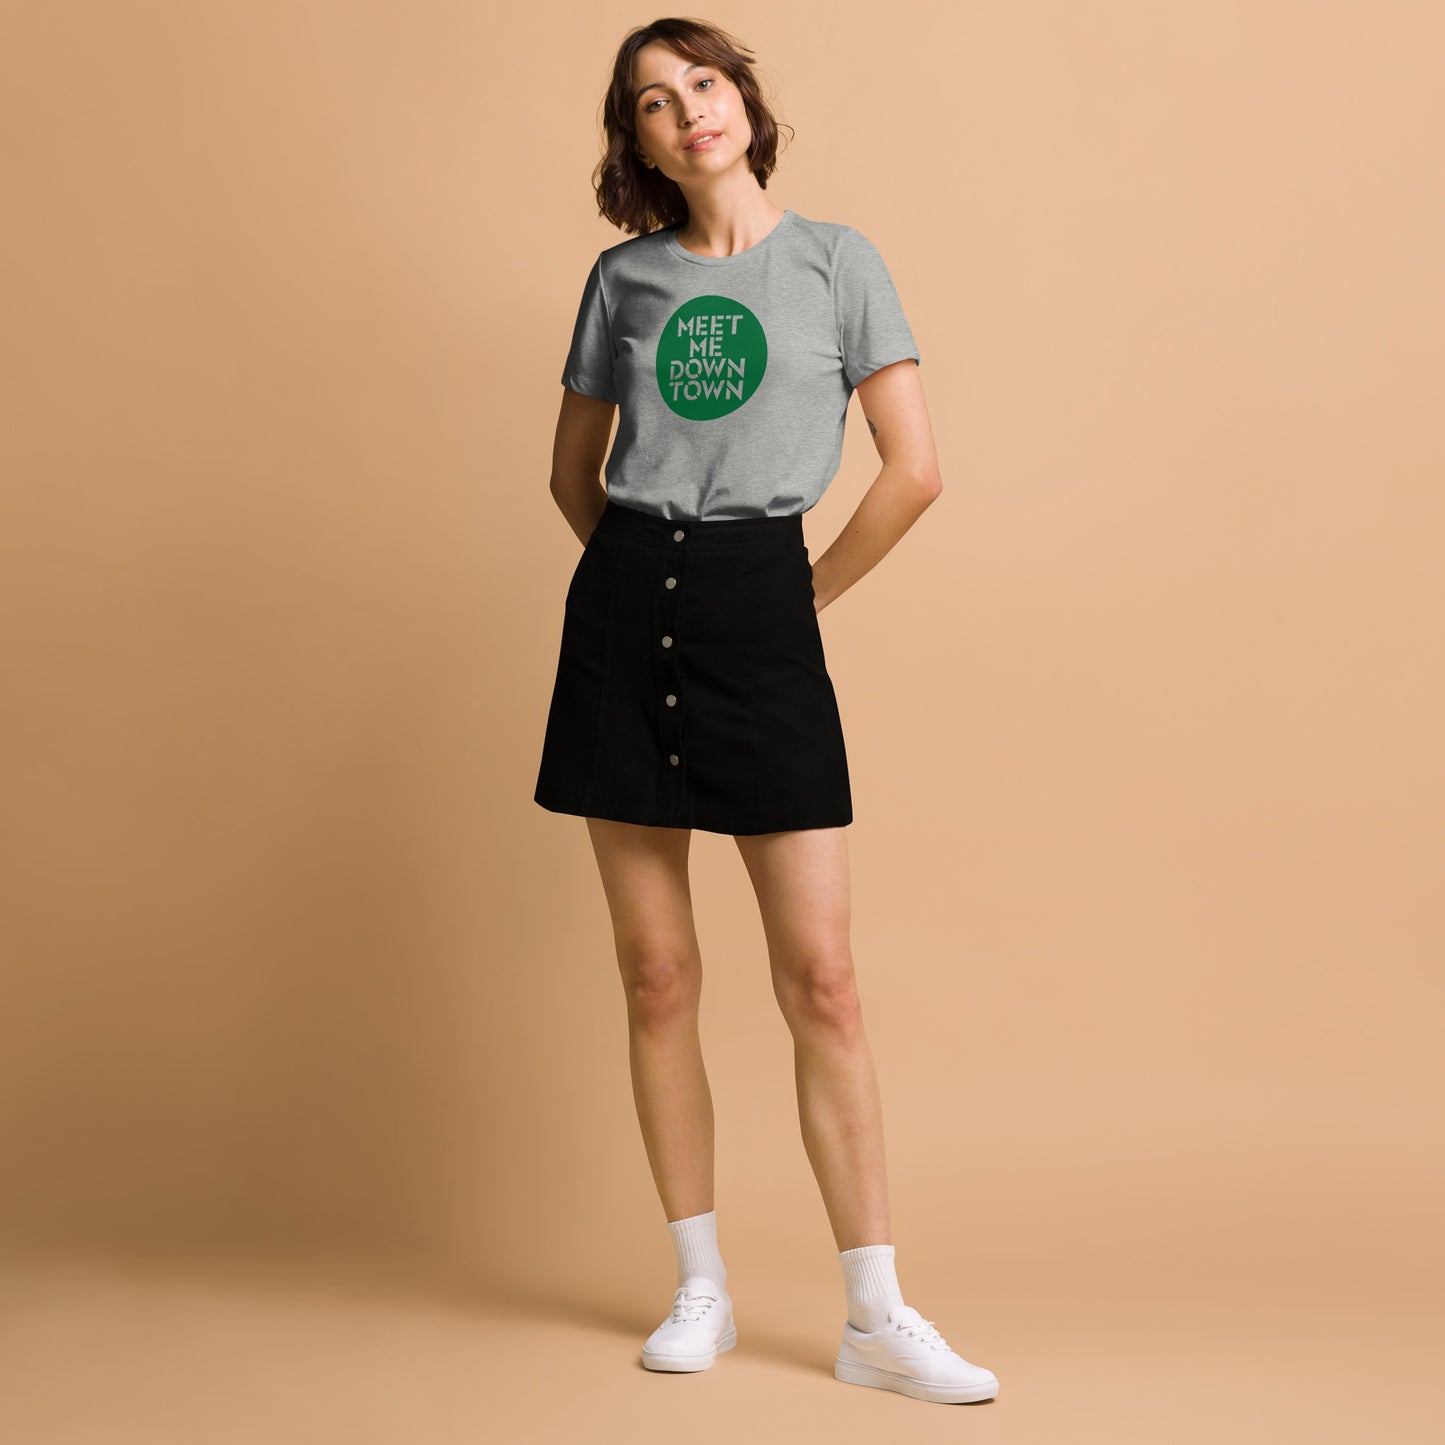 "Meet Me Downtown" Green Women’s Relaxed Tri-Blend T-shirt